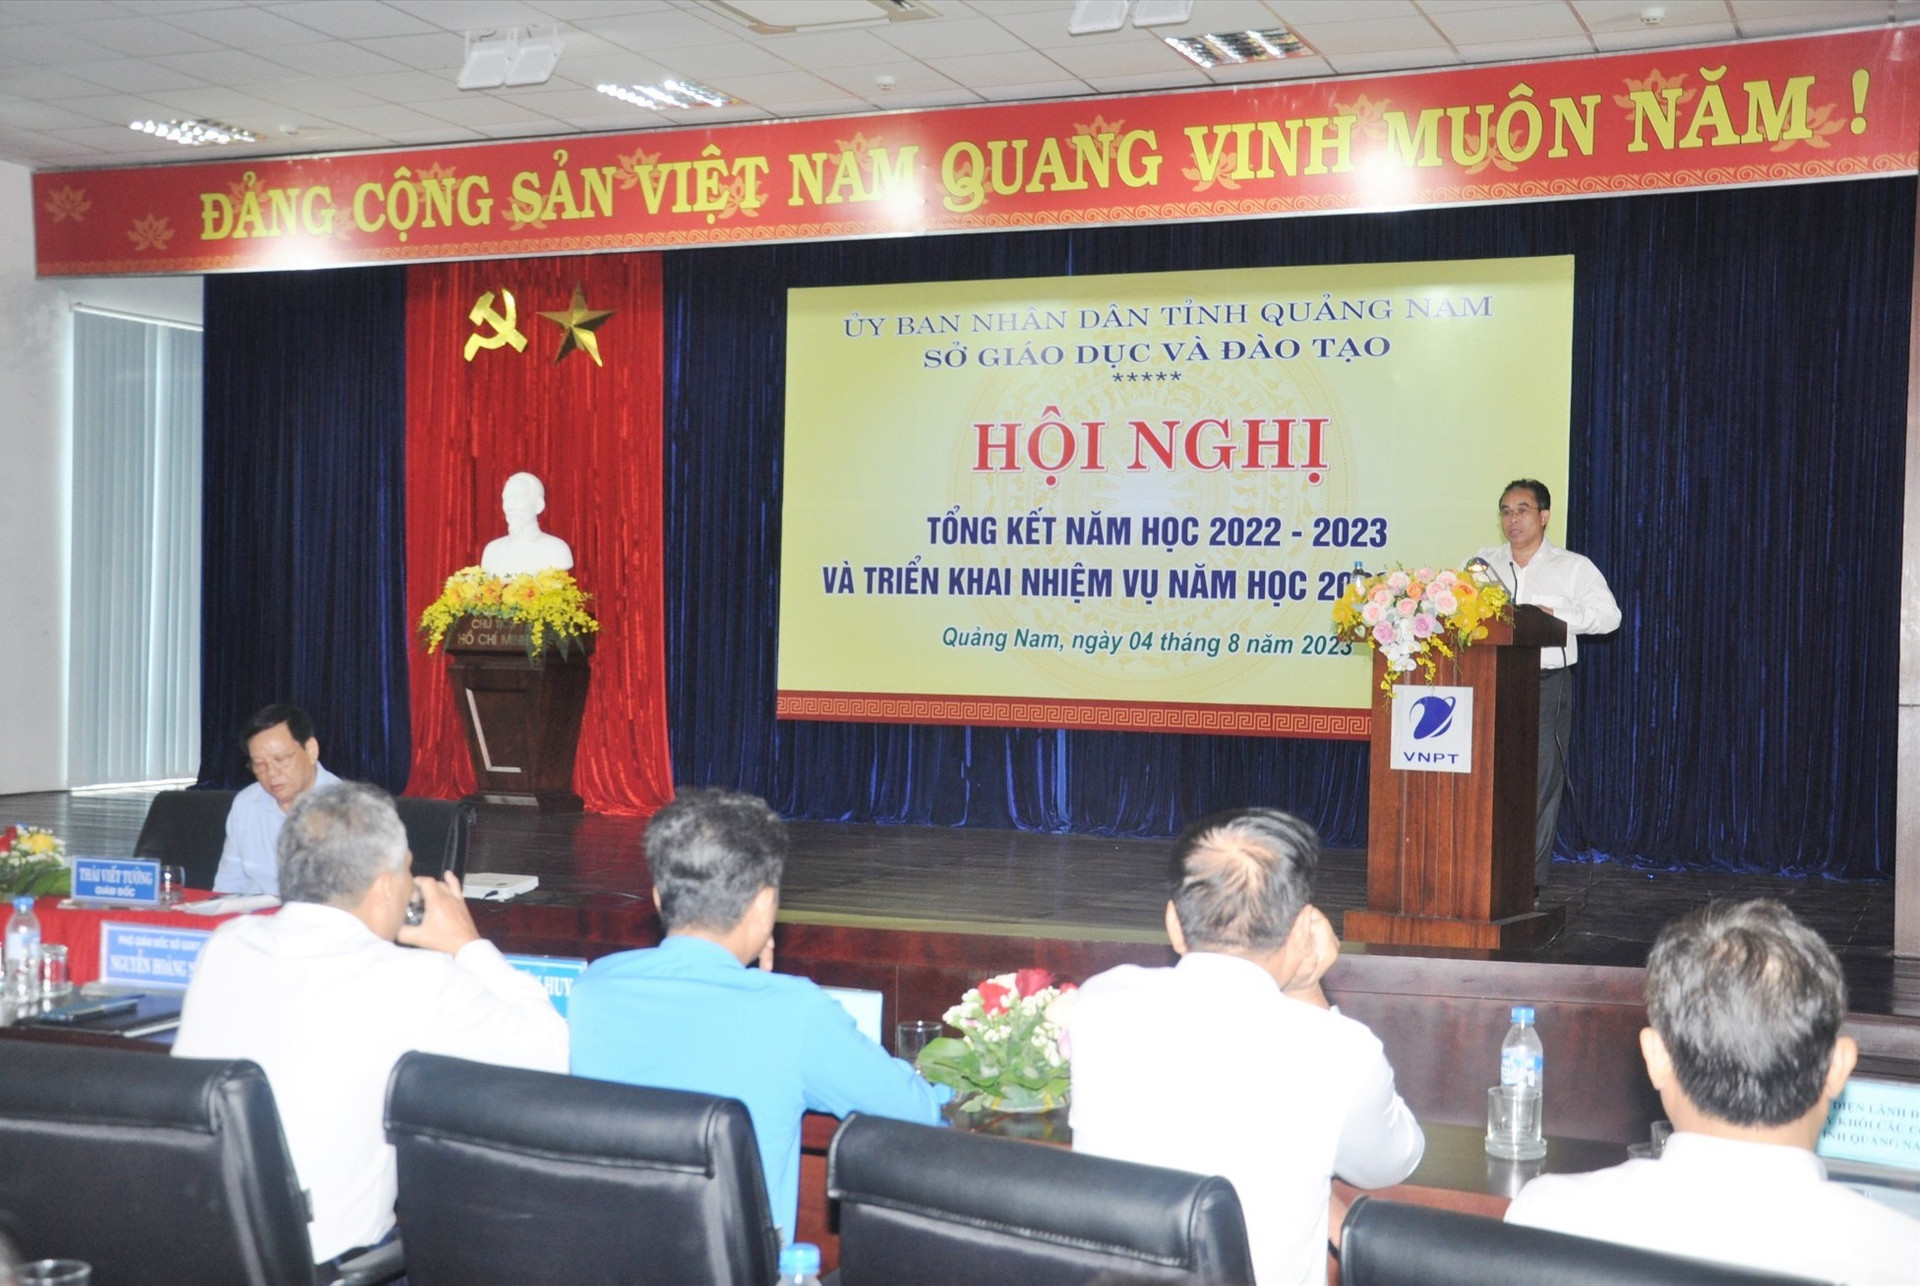 Phó Chủ tịch UBND tỉnh Trần Anh Tuấn phát biểu tại hội nghị gợi ý một số nhiệm vụ trọng tâm cần thực hiện trong thời gian tới. Ảnh: X.P